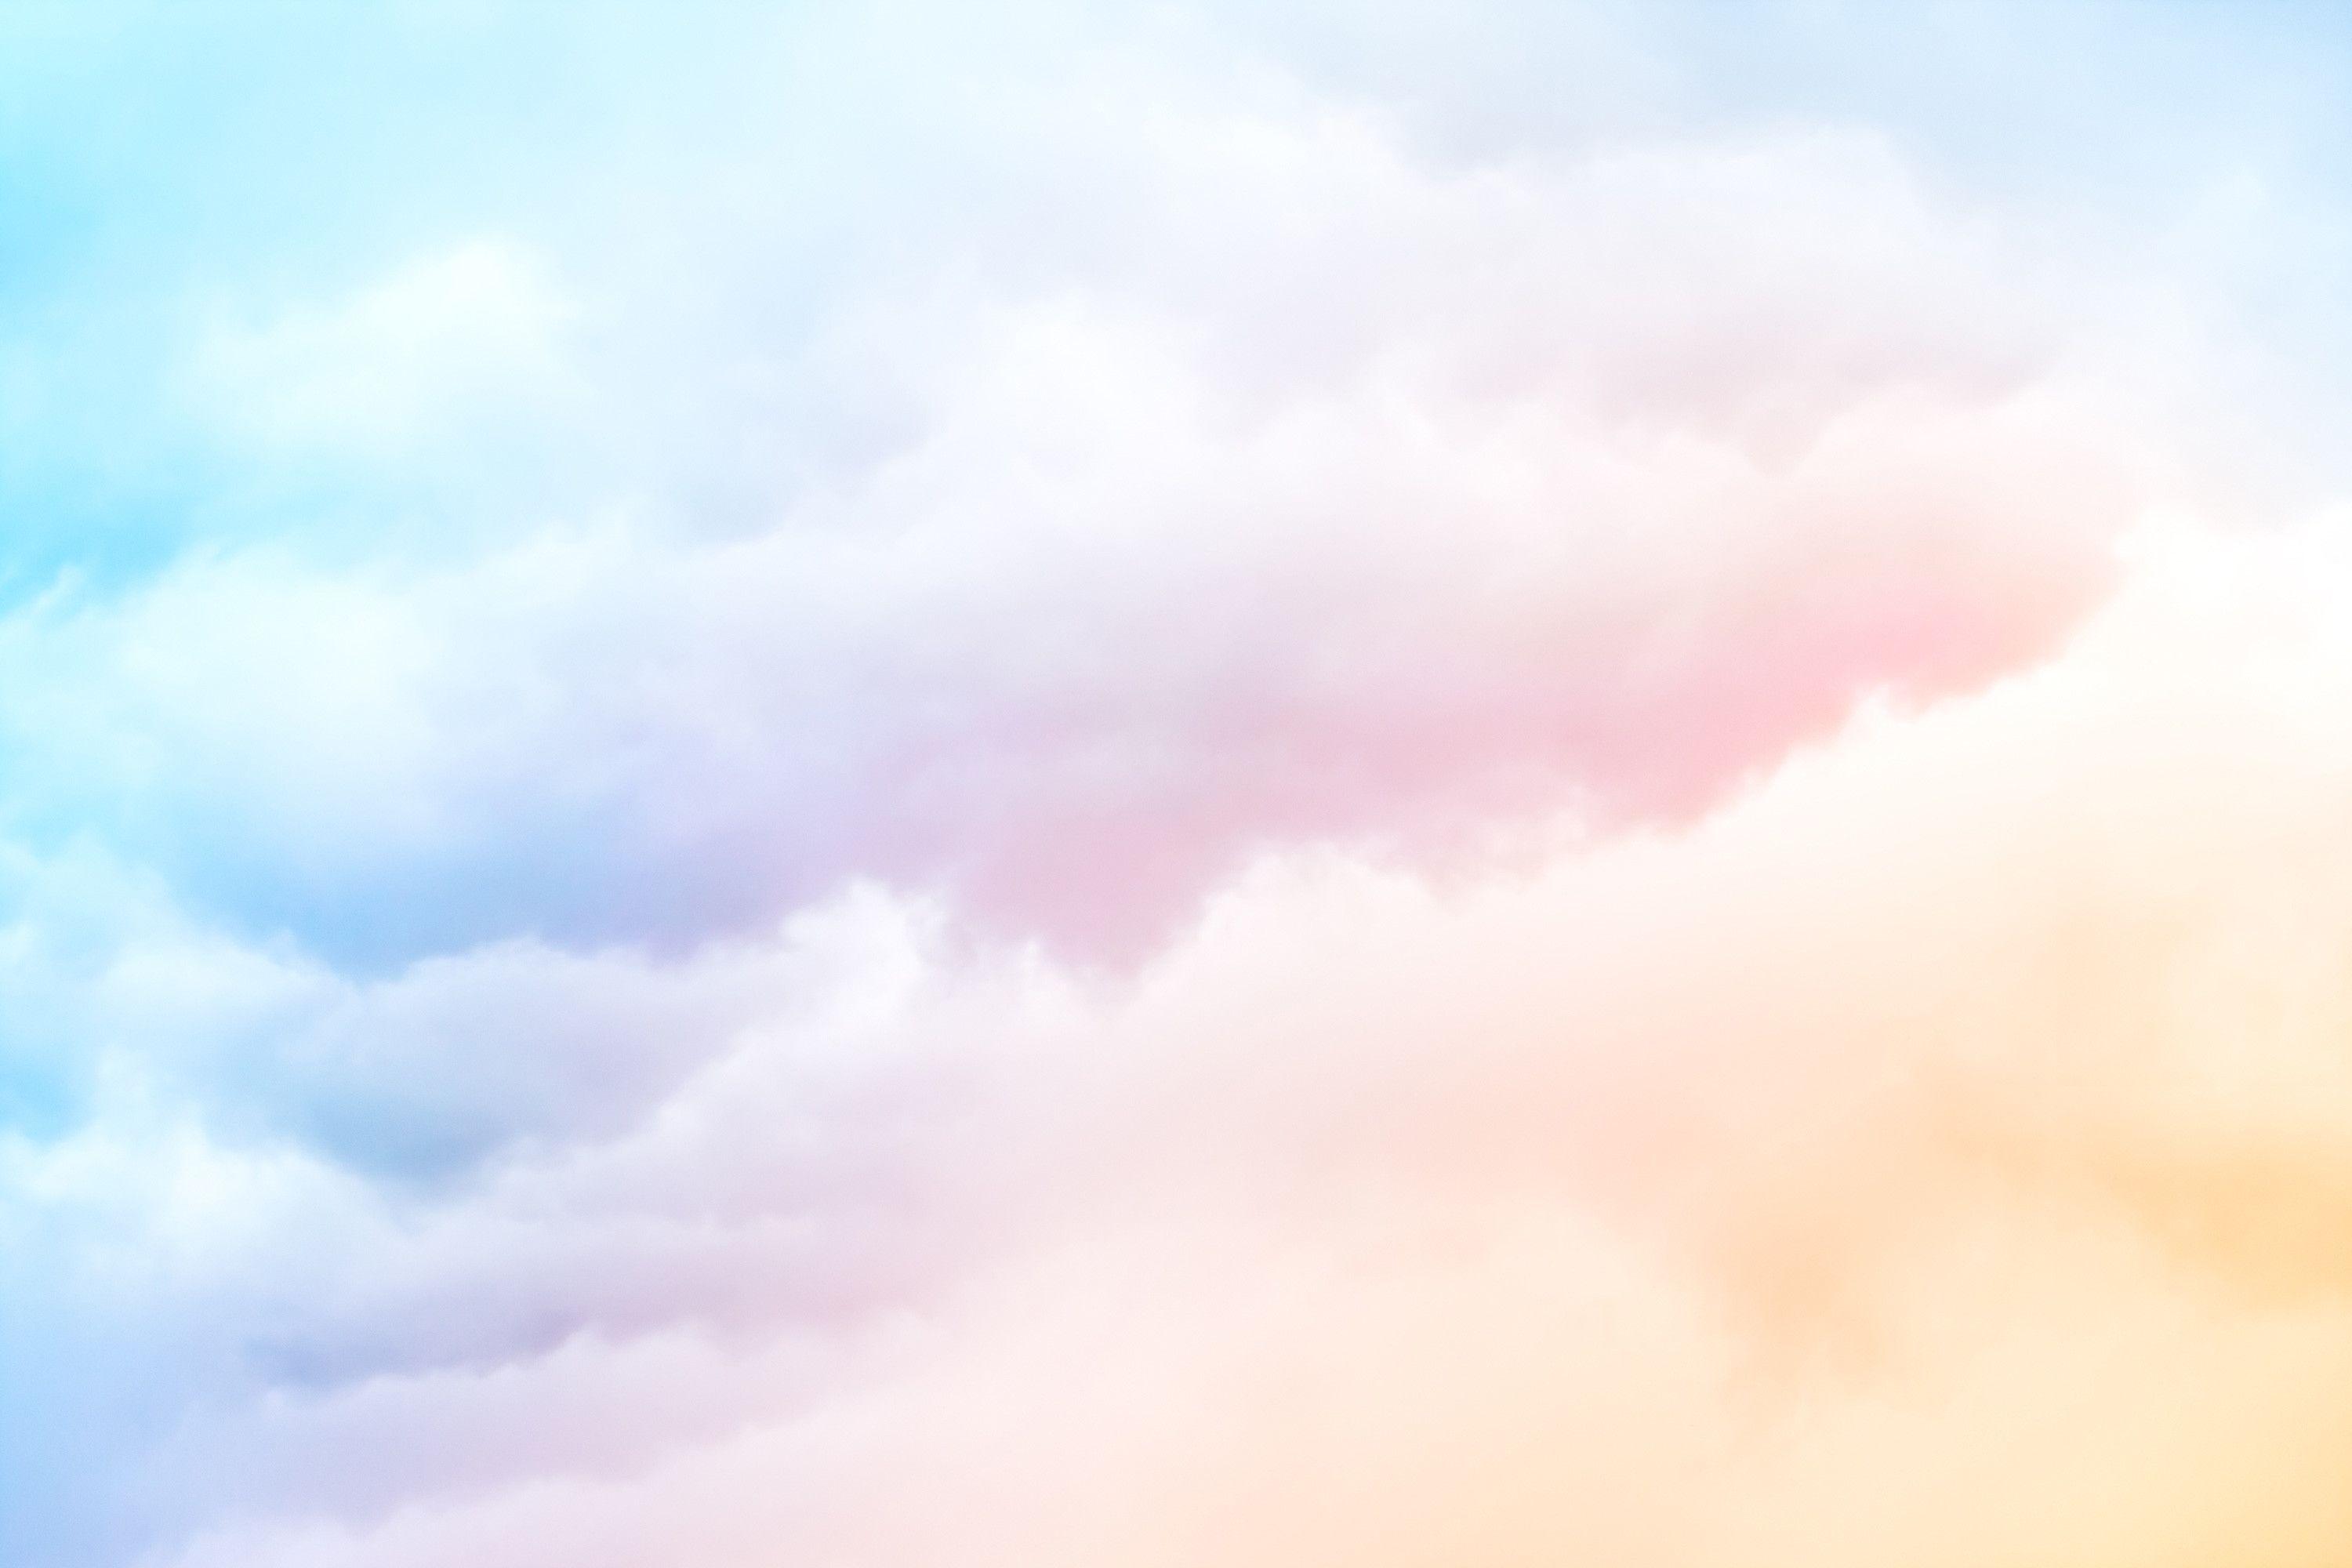 Pastel Clouds iPhone Wallpapers - Top Những Hình Ảnh Đẹp